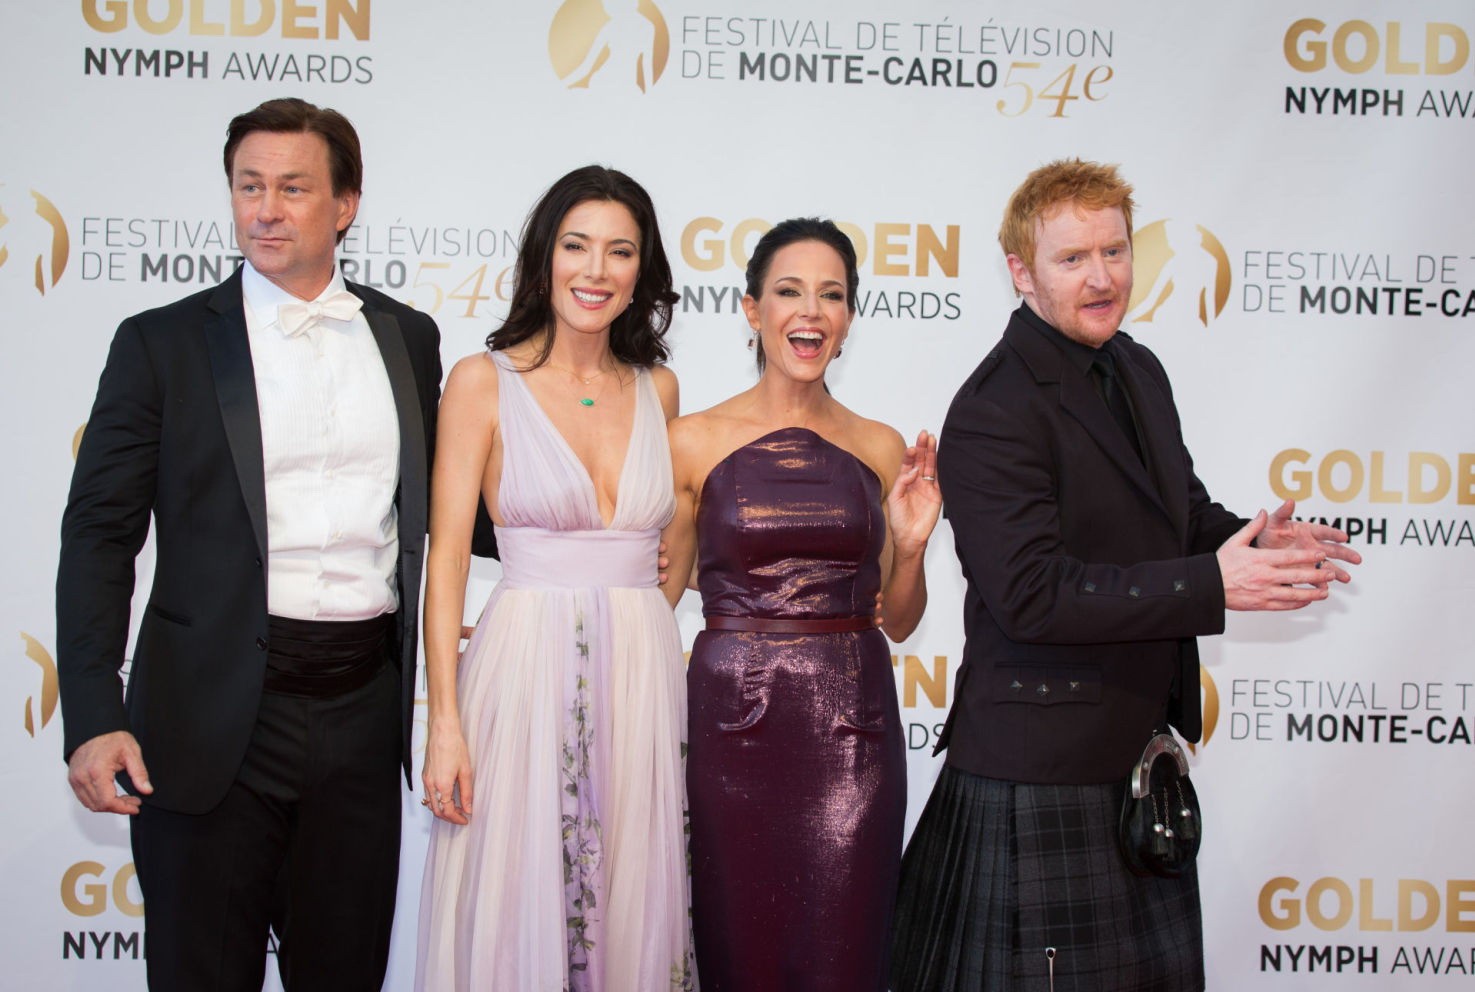 Monte Carlo Golden Nymph Awards 12